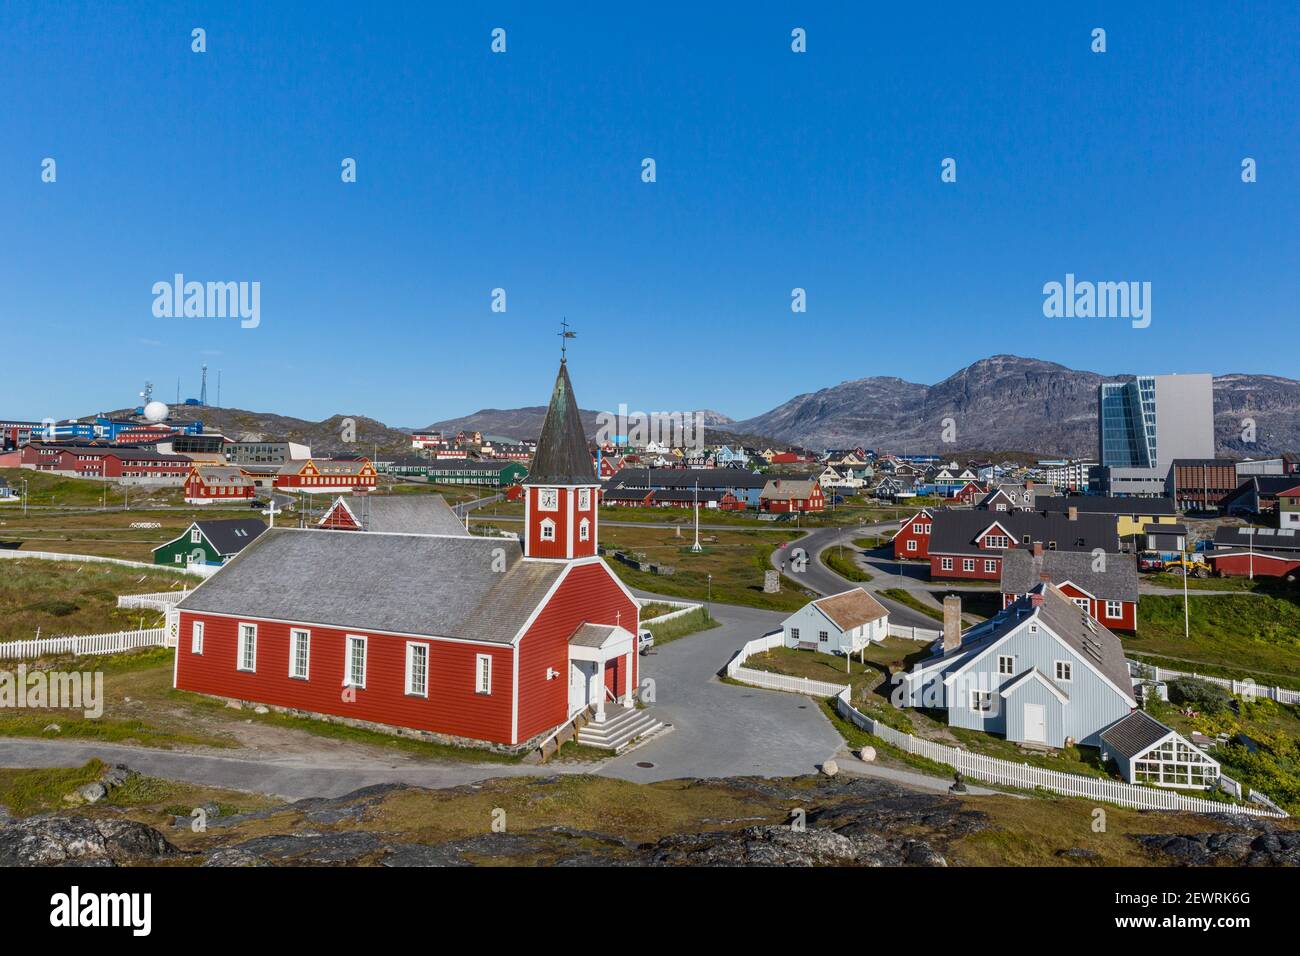 La cathédrale luthérienne de Nuuk (Godthab), la capitale et la plus grande ville du Groenland, les régions polaires Banque D'Images